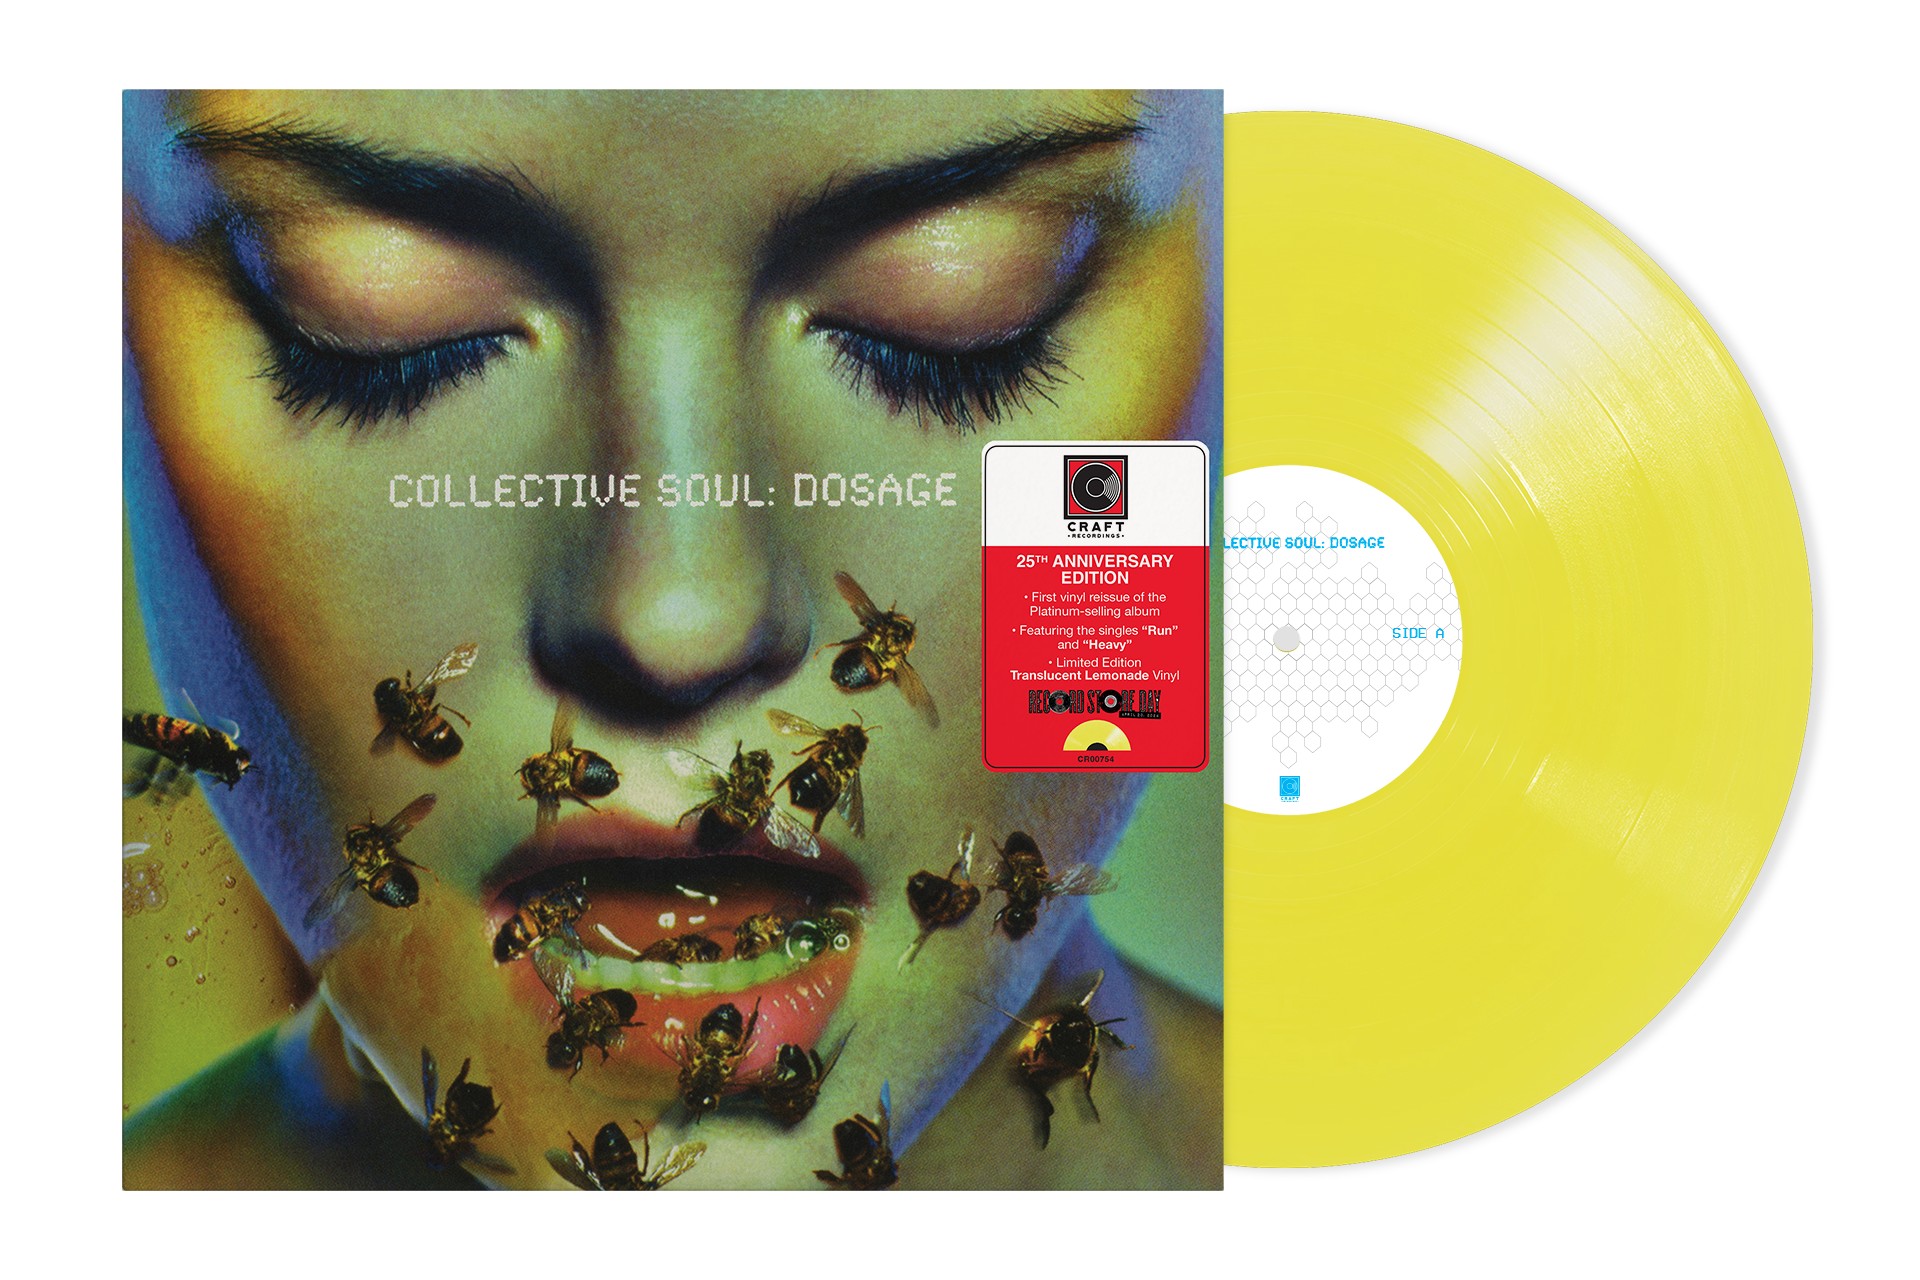 Collective Soul ‘Dosage’ album packshot